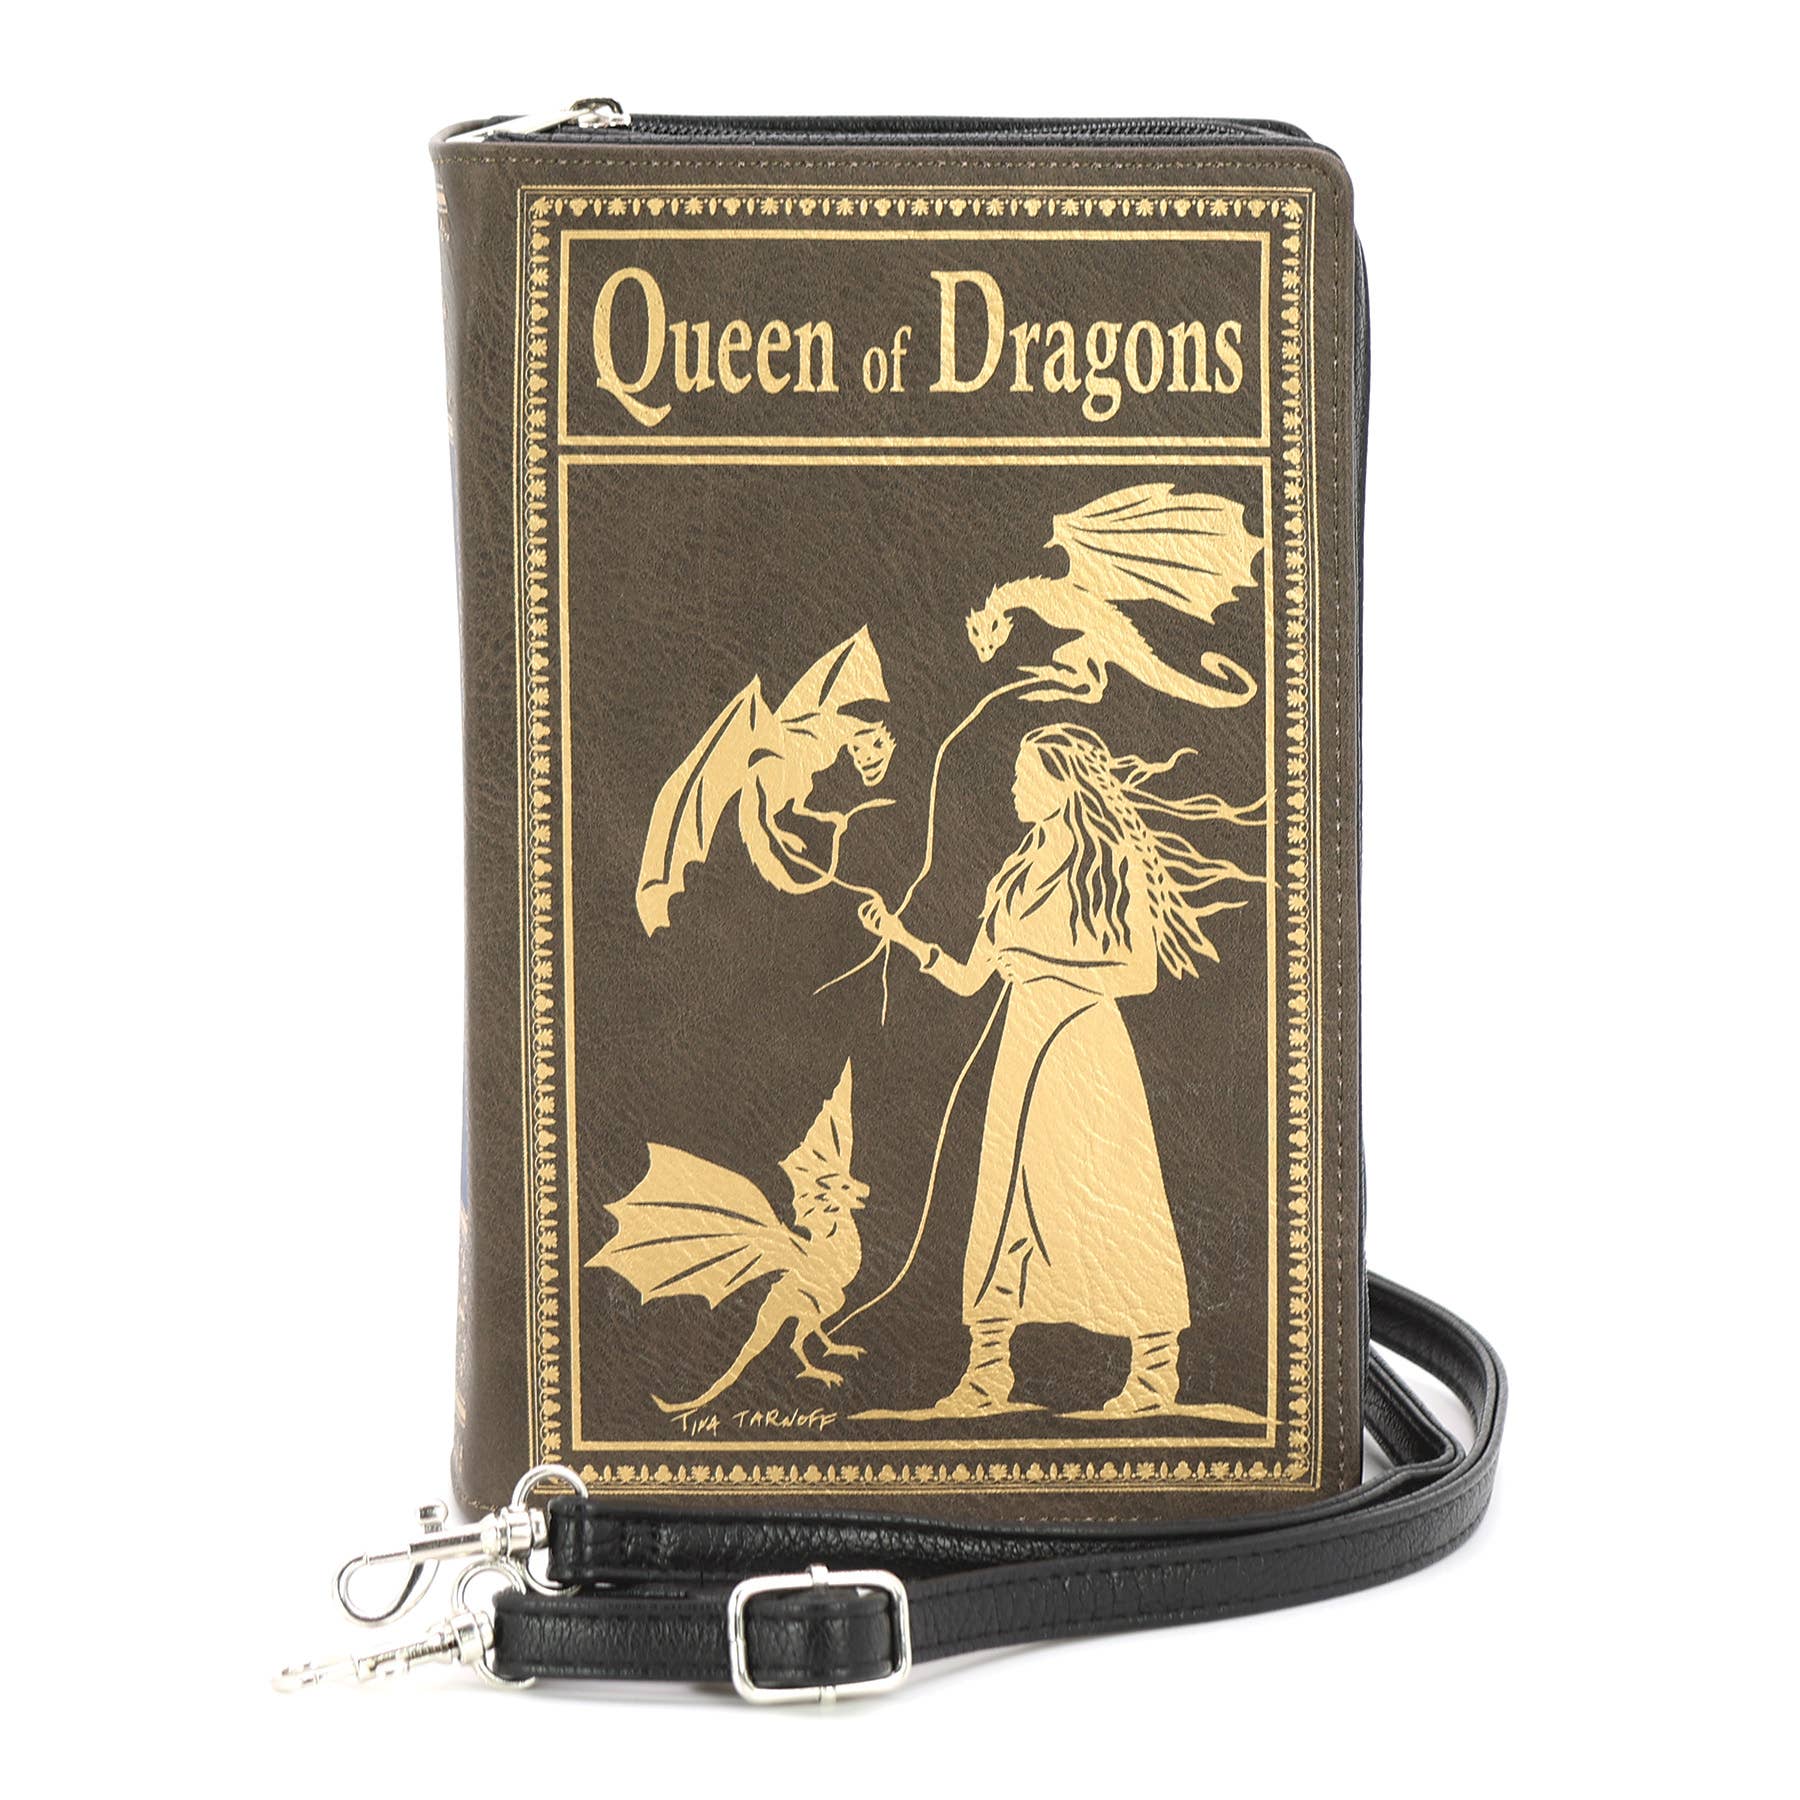 Queen of Dragons Book Clutch Bag in Vinyl